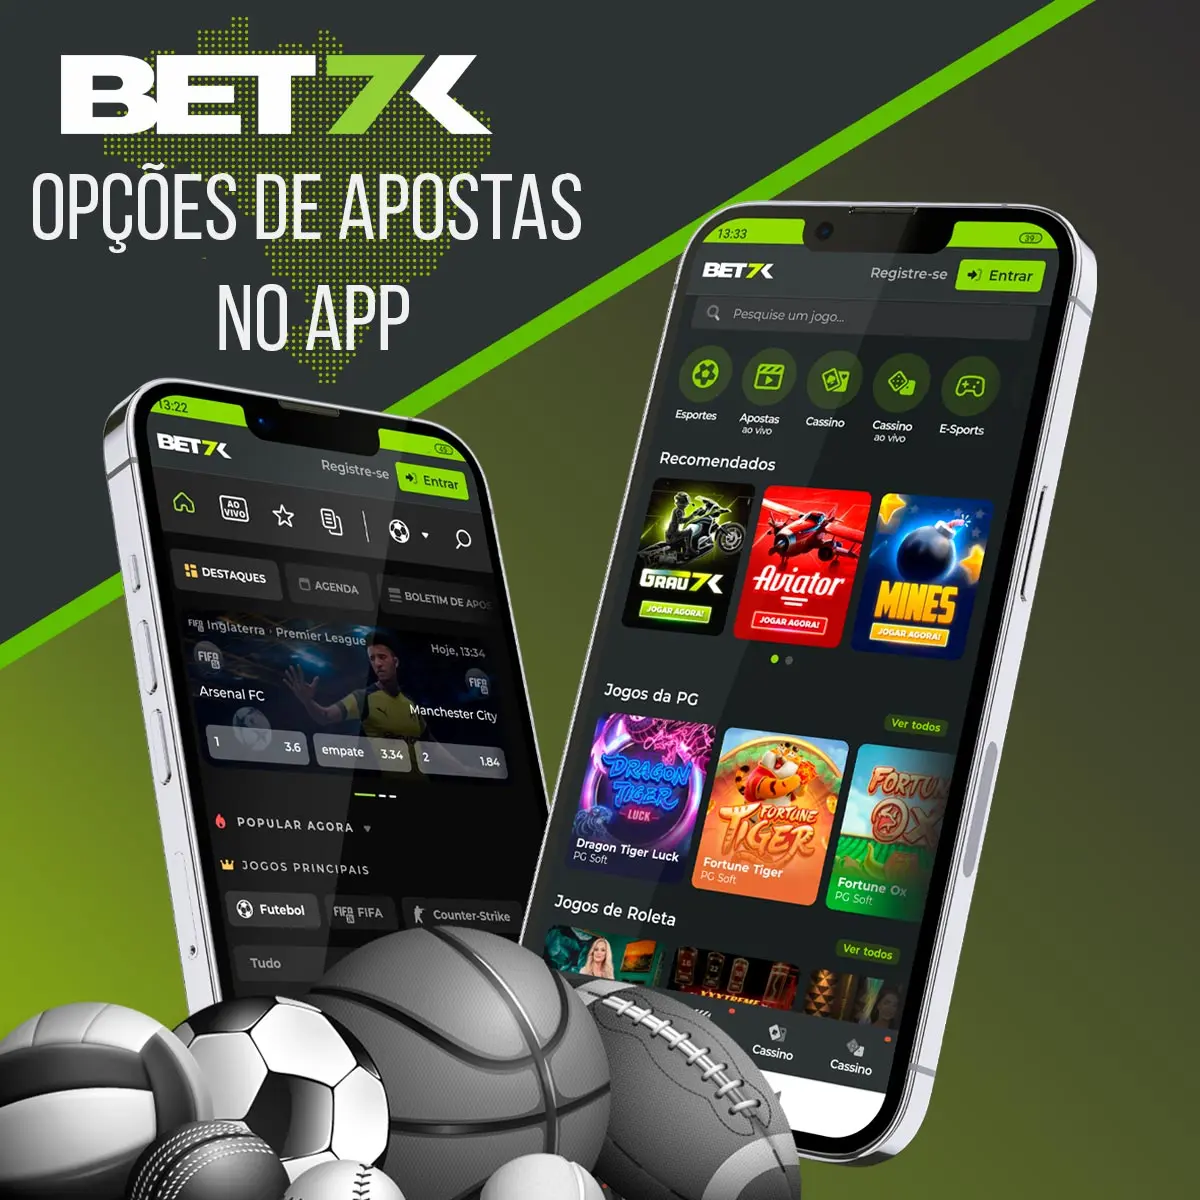 Uma visão geral das opções de apostas no aplicativo de apostas Bet7k no Brasil